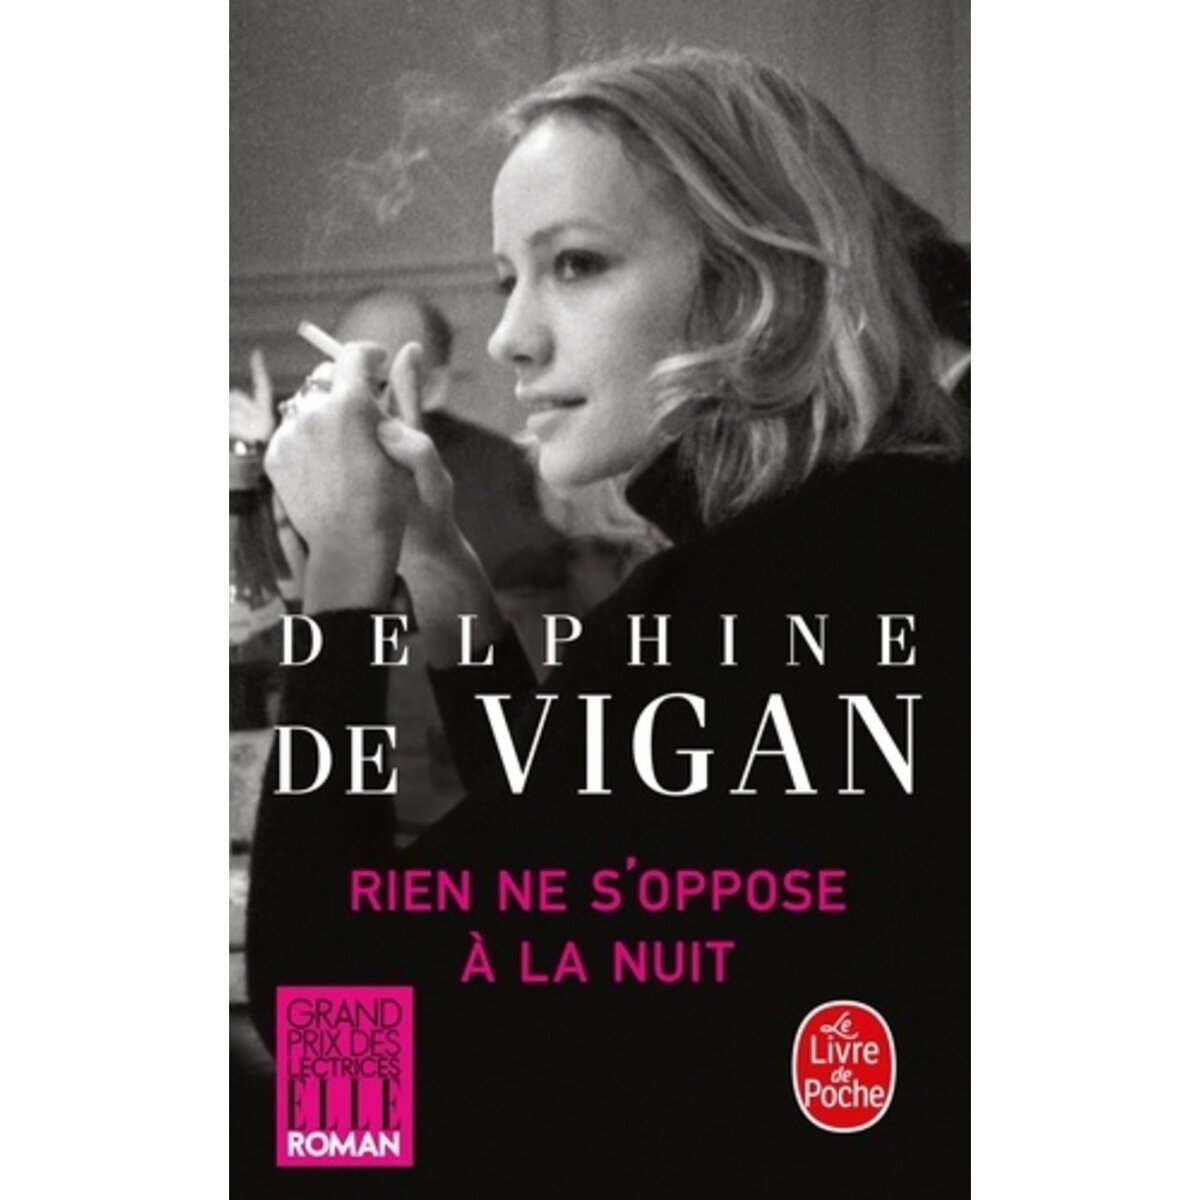  RIEN NE S'OPPOSE A LA NUIT, Vigan Delphine de